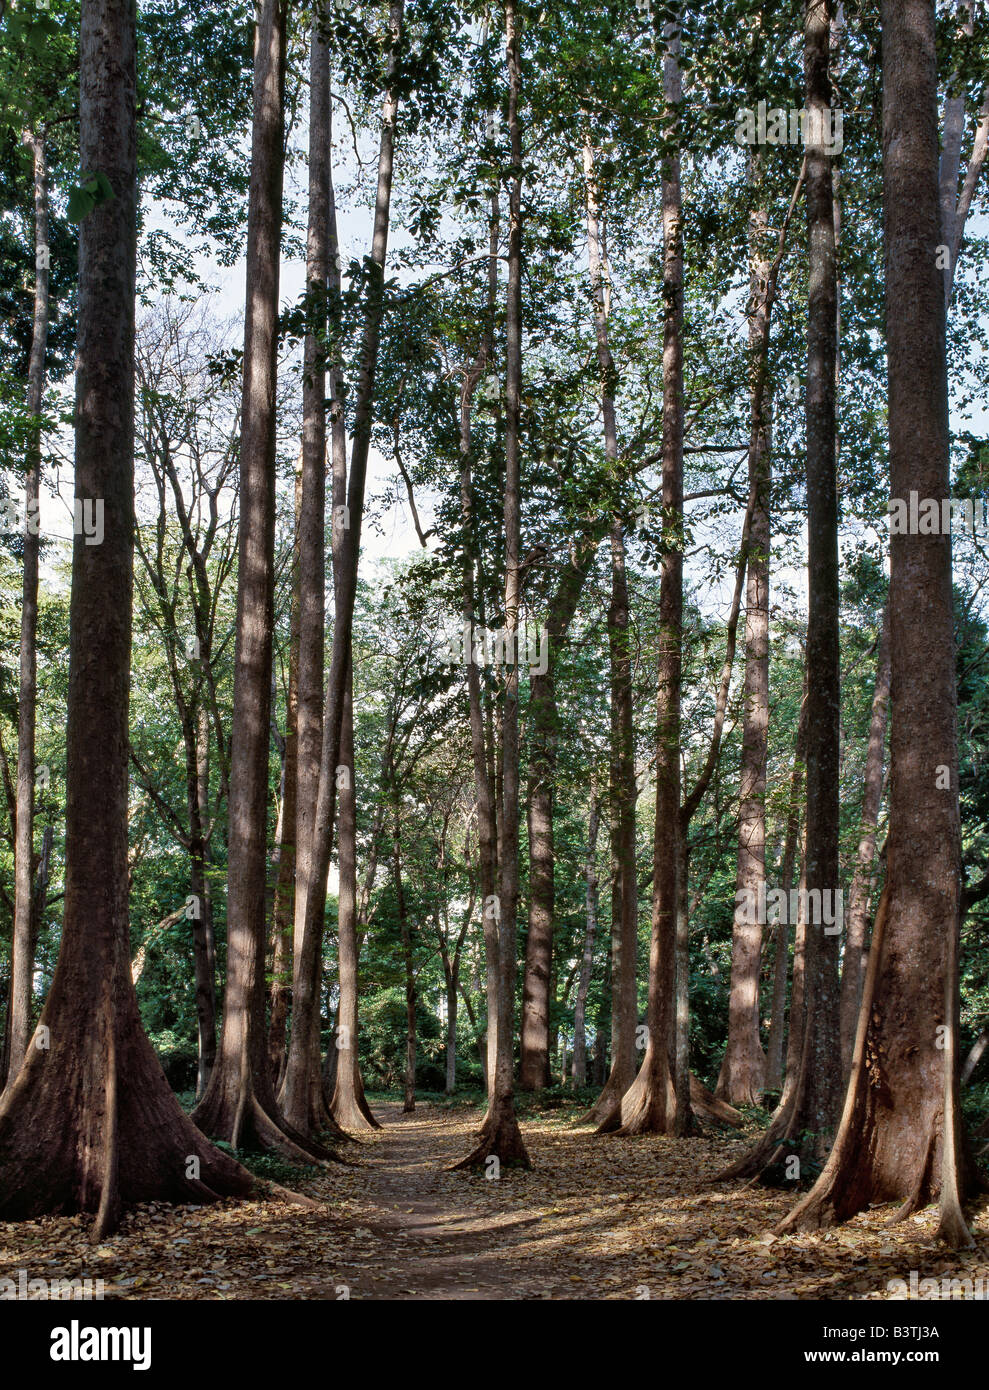 La Tanzanie, Tanga, Mombo. Un beau stand d'arbres indigènes dans une petite parcelle de forêt à la périphérie de Mombo au pied de la montagnes USAmbara. Banque D'Images